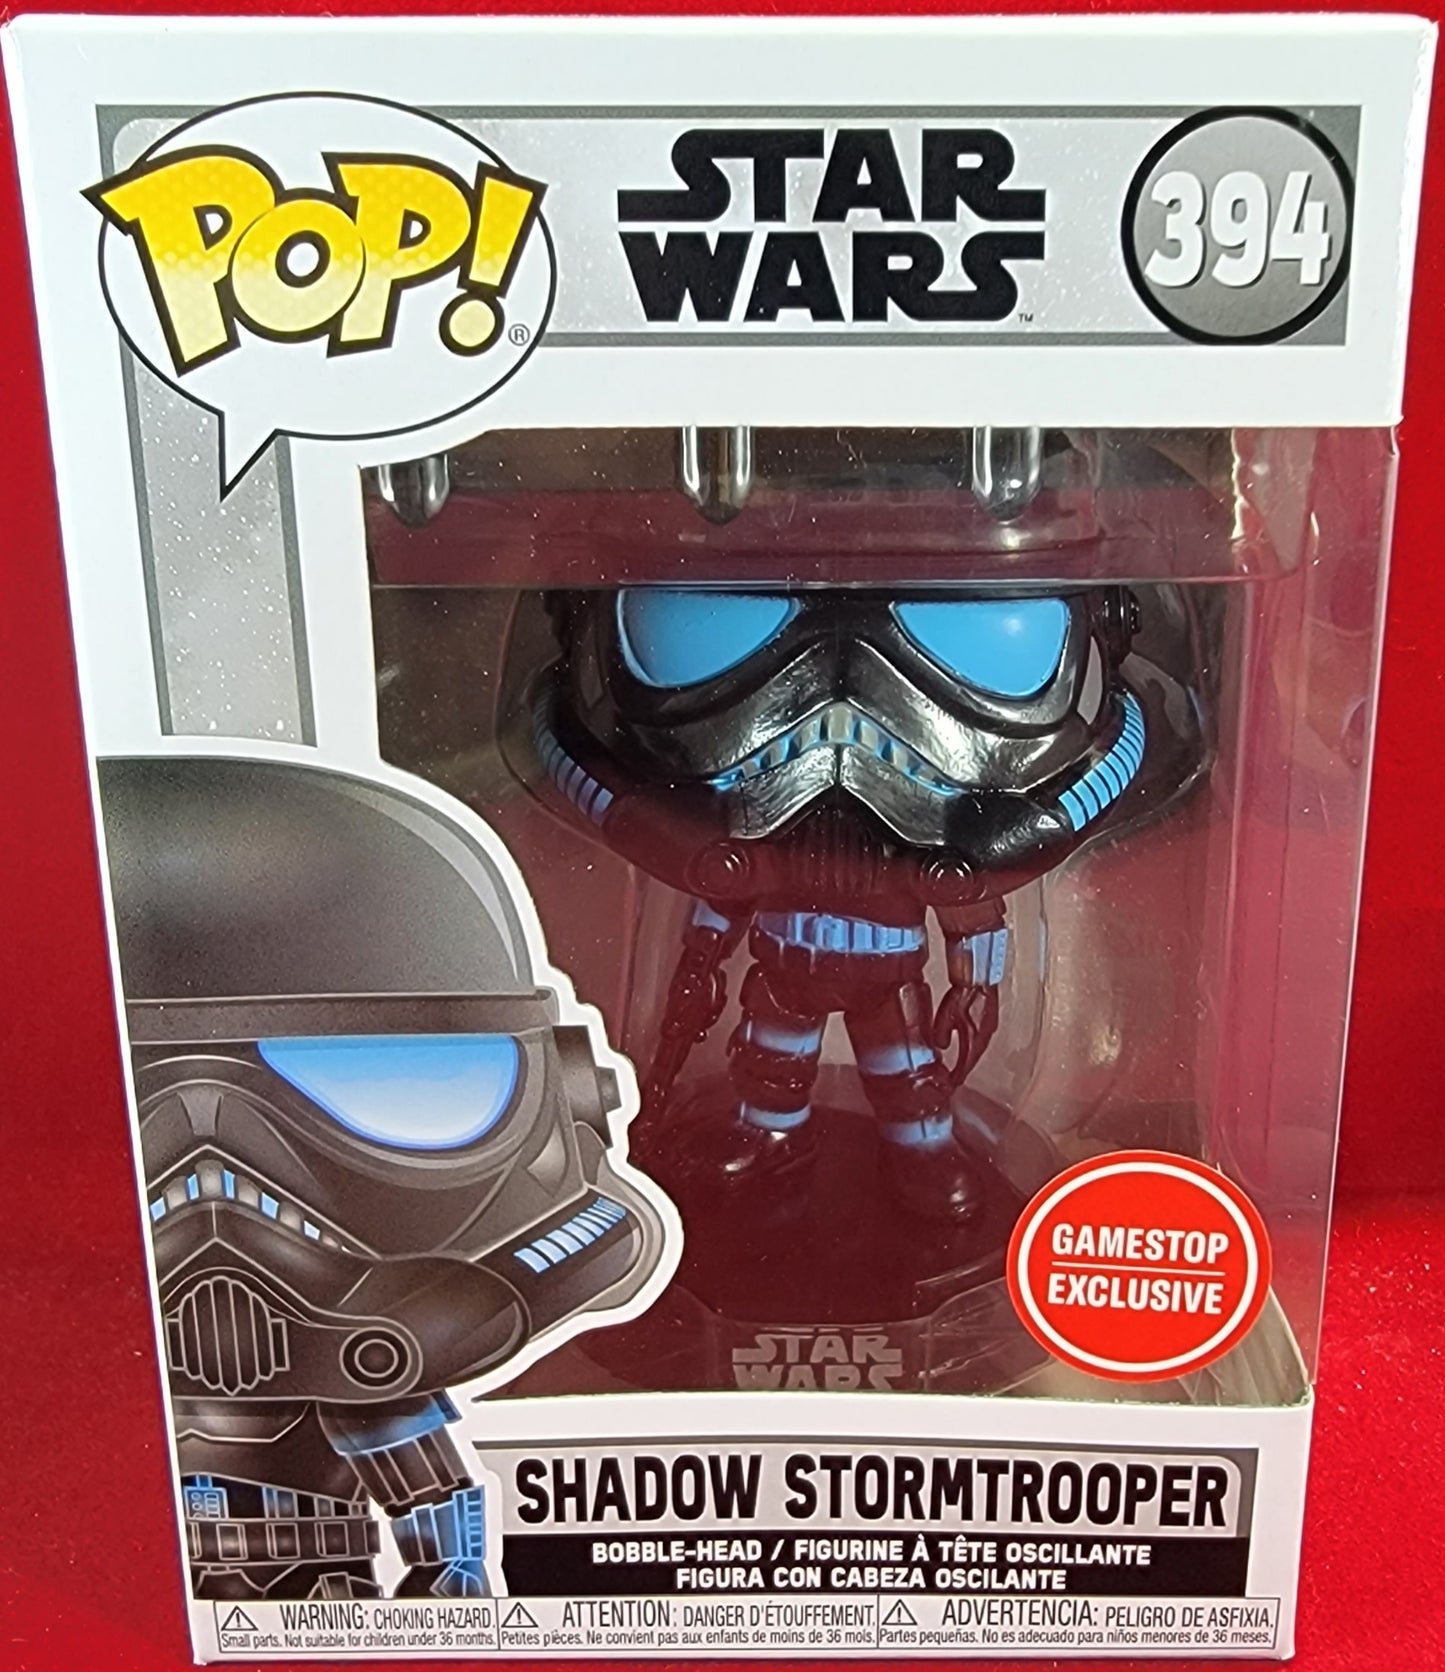 Shadow stormtrooper gamestop exclusive funko # 394 (nib)